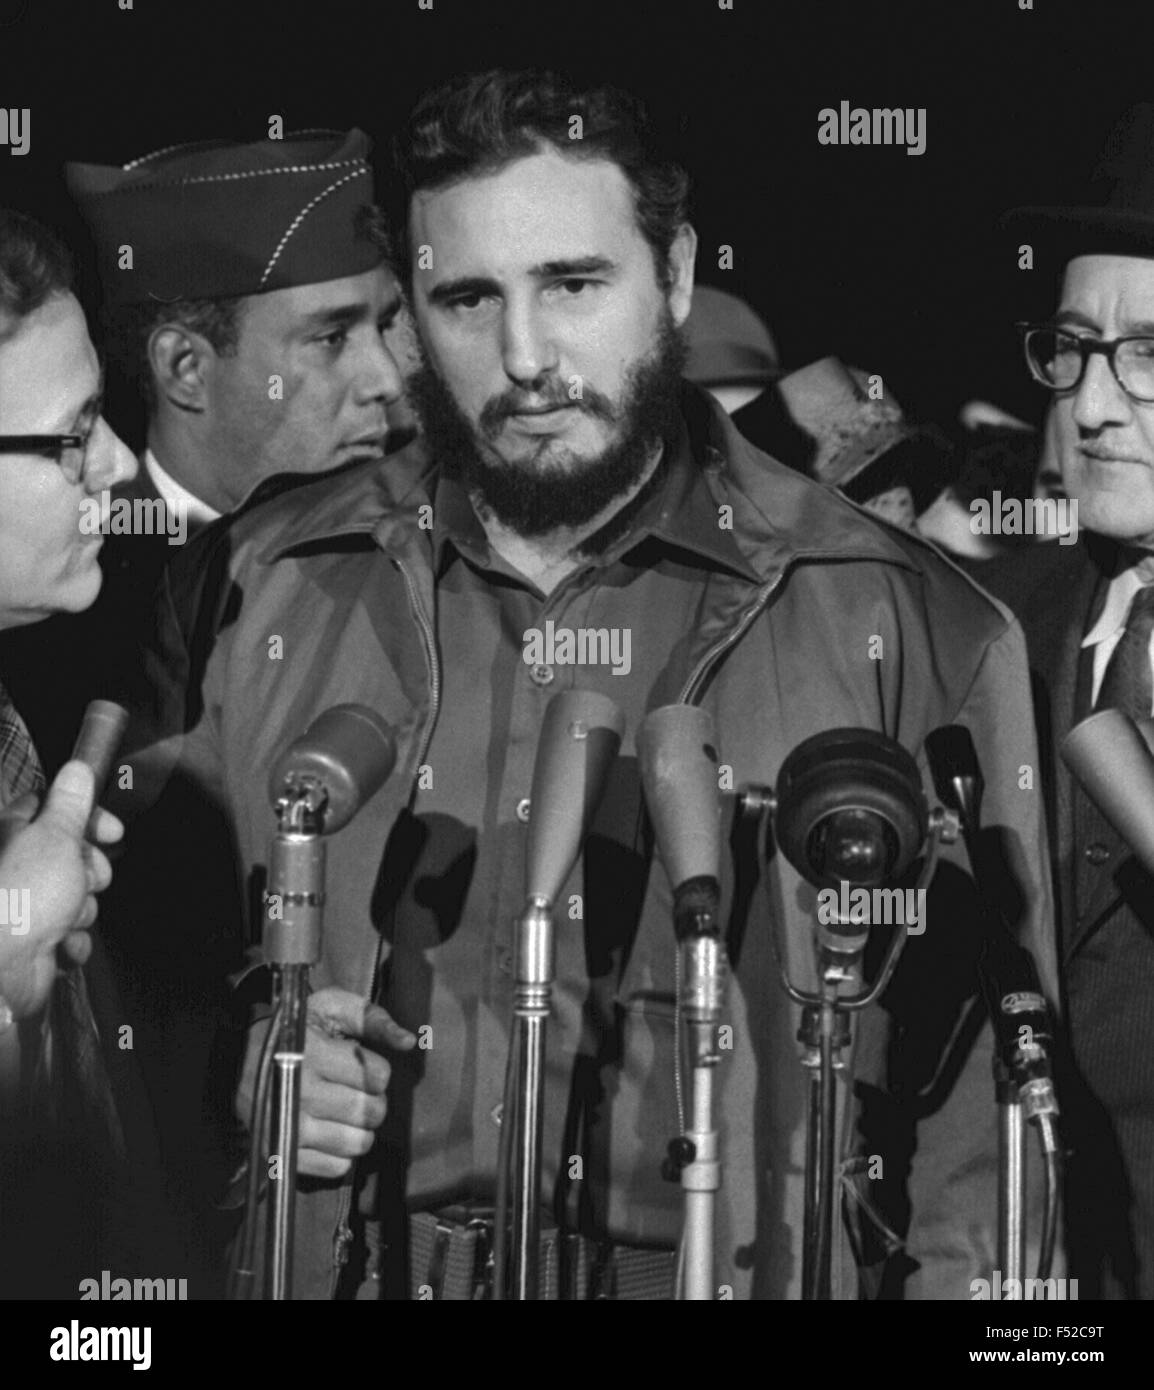 Fidel castro immagini e fotografie stock ad alta risoluzione - Alamy